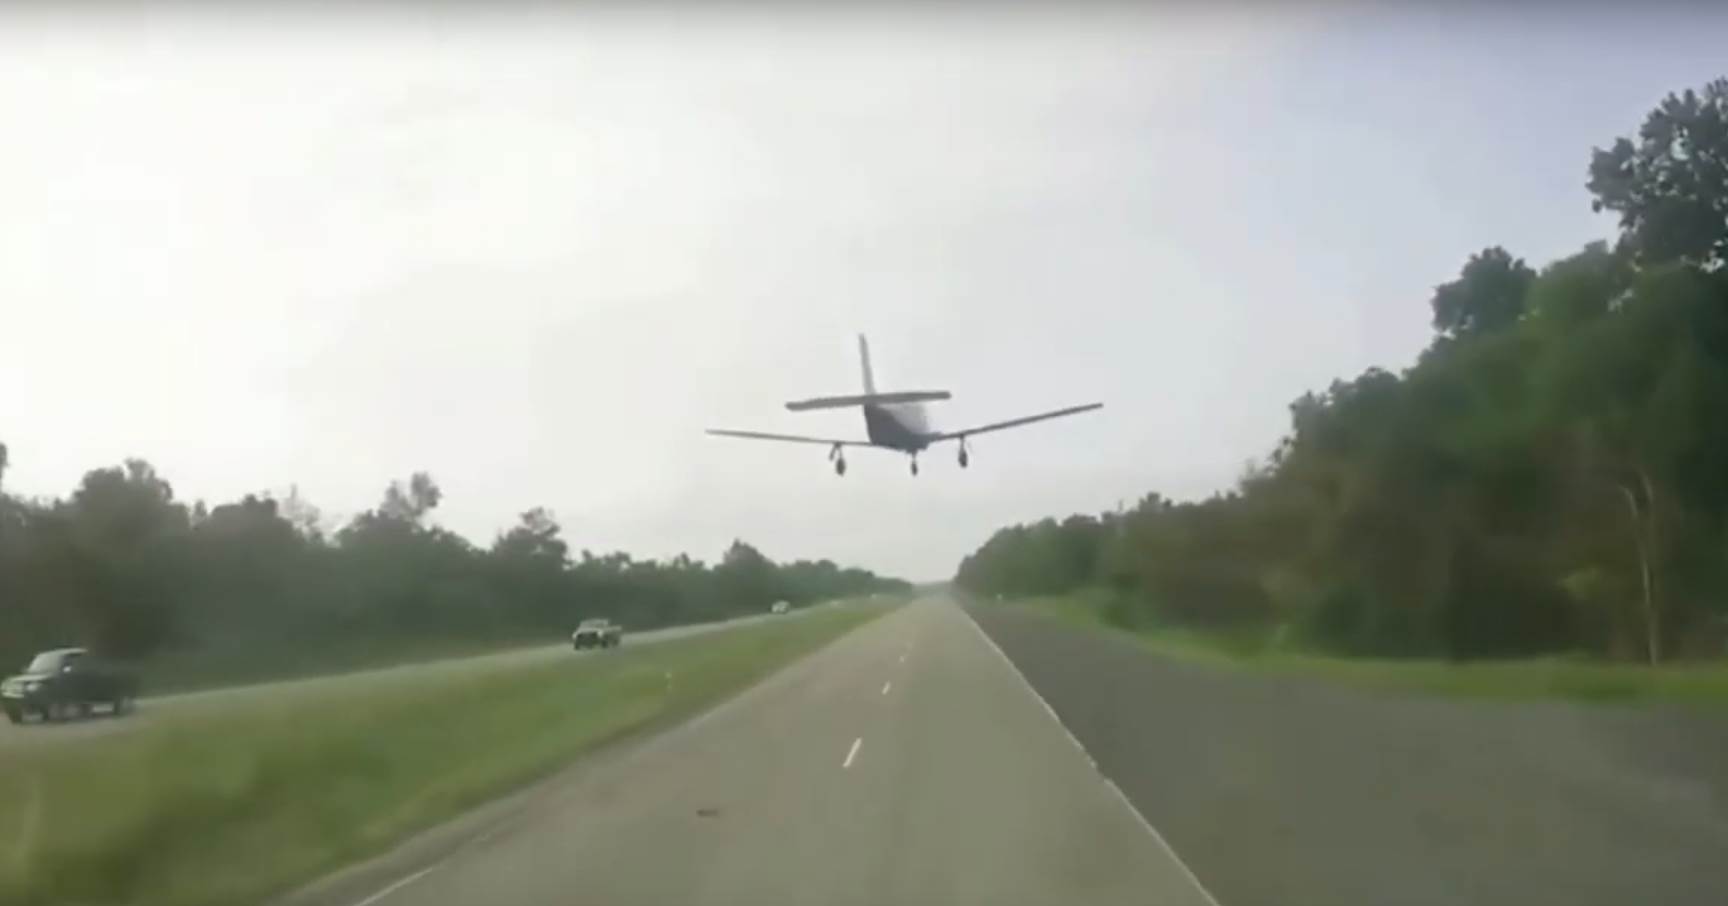  Luizijana-avion-prinudno-sletanje-na-autoput-video 